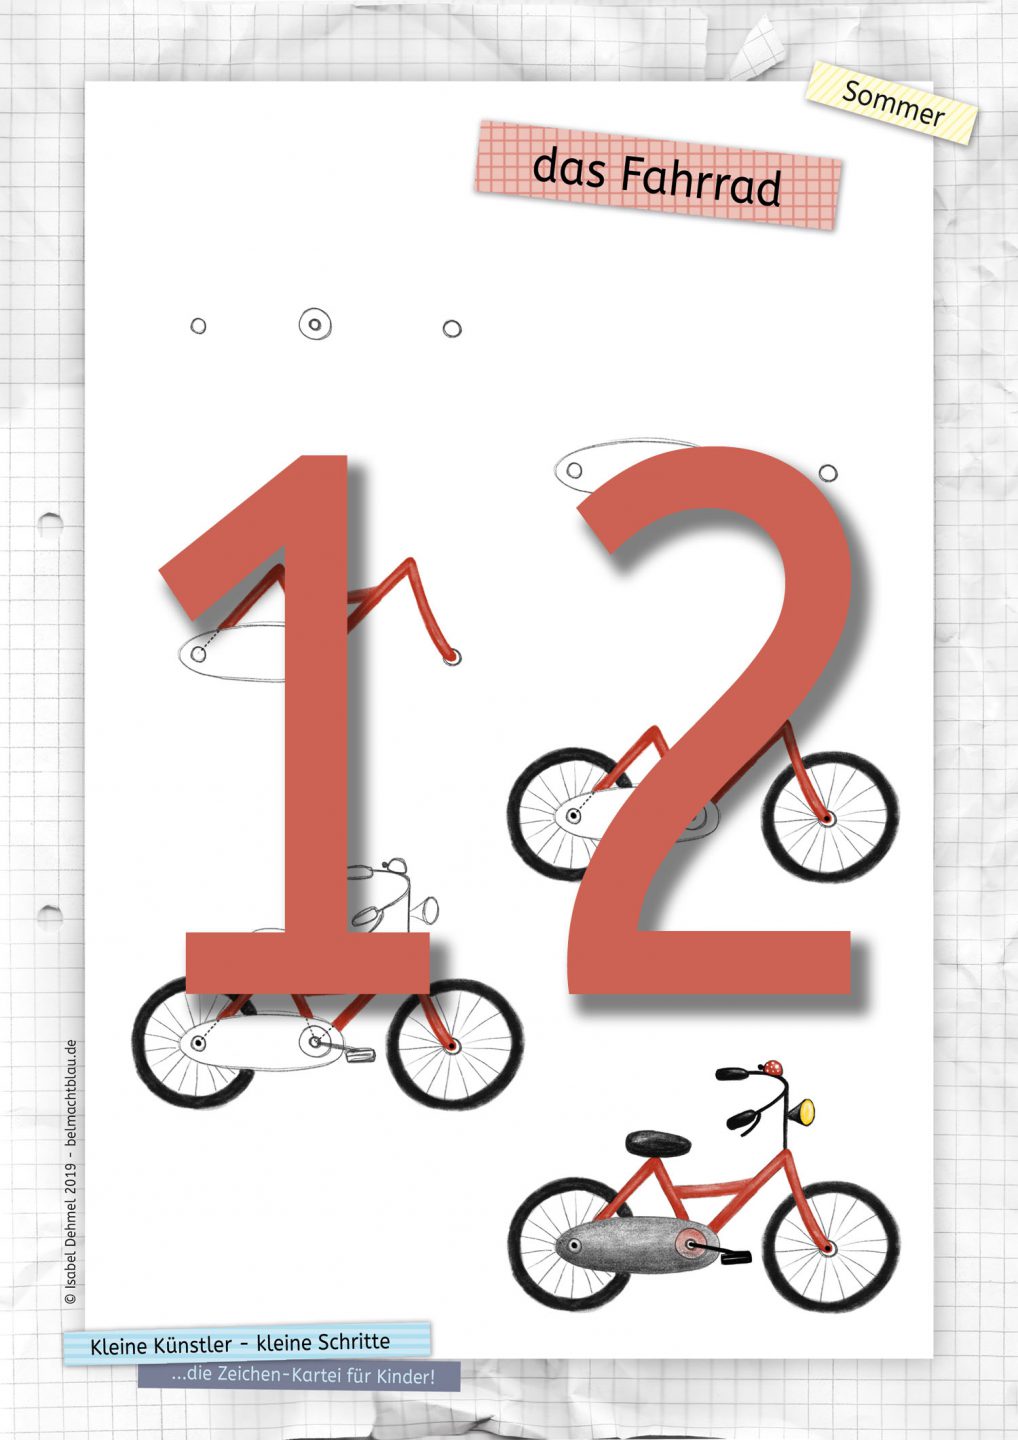 Zeichen-Kartei Nr. 12: ein Fahrrad zeichnen - "Kleine Künstler - kleine Schritte" 